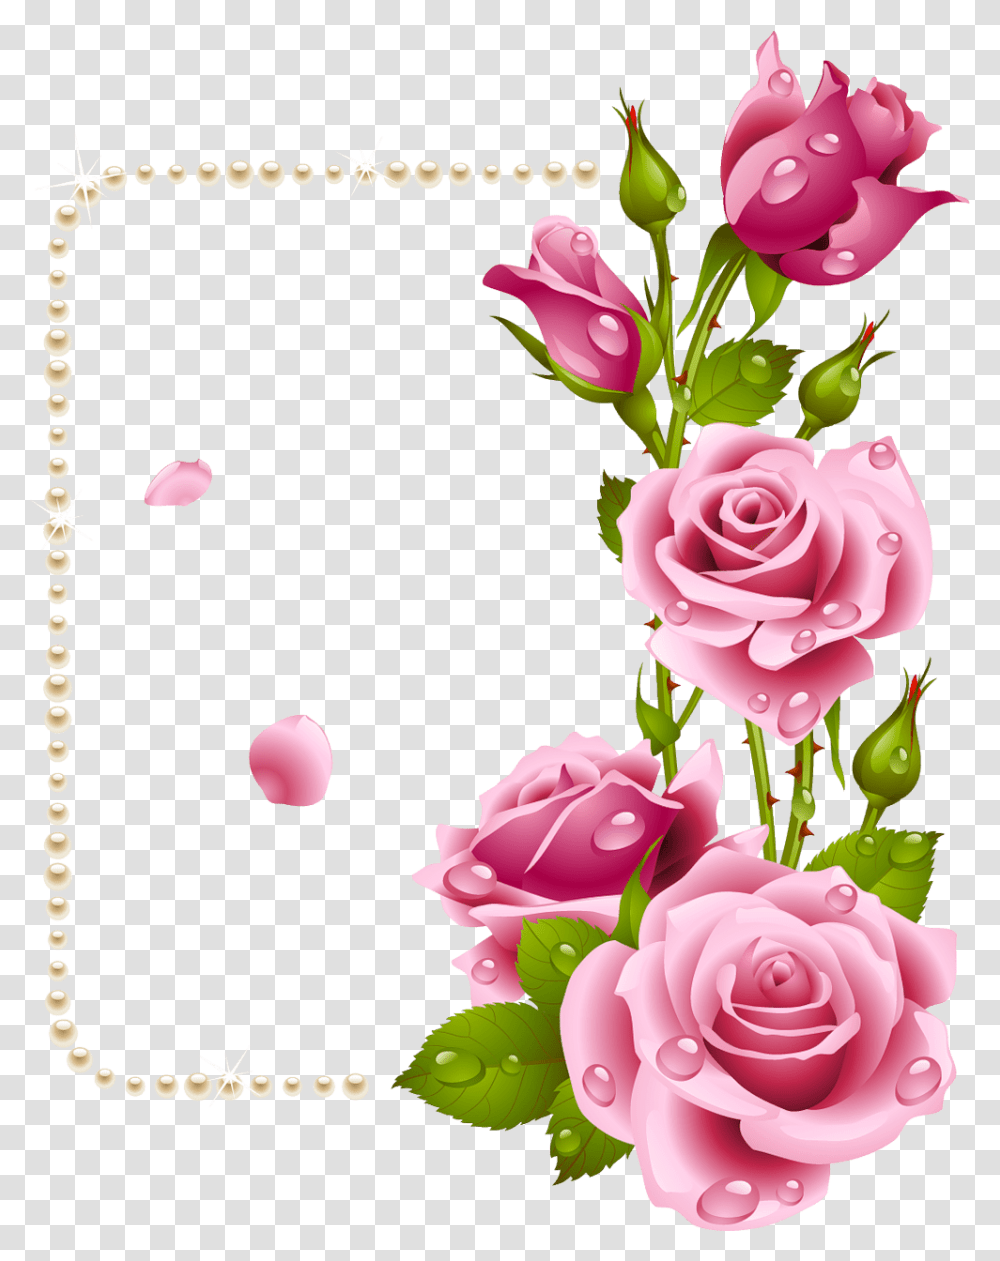 Rose Dil Good Morning Ramka V Vide Cvetov, Floral Design, Pattern Transparent Png